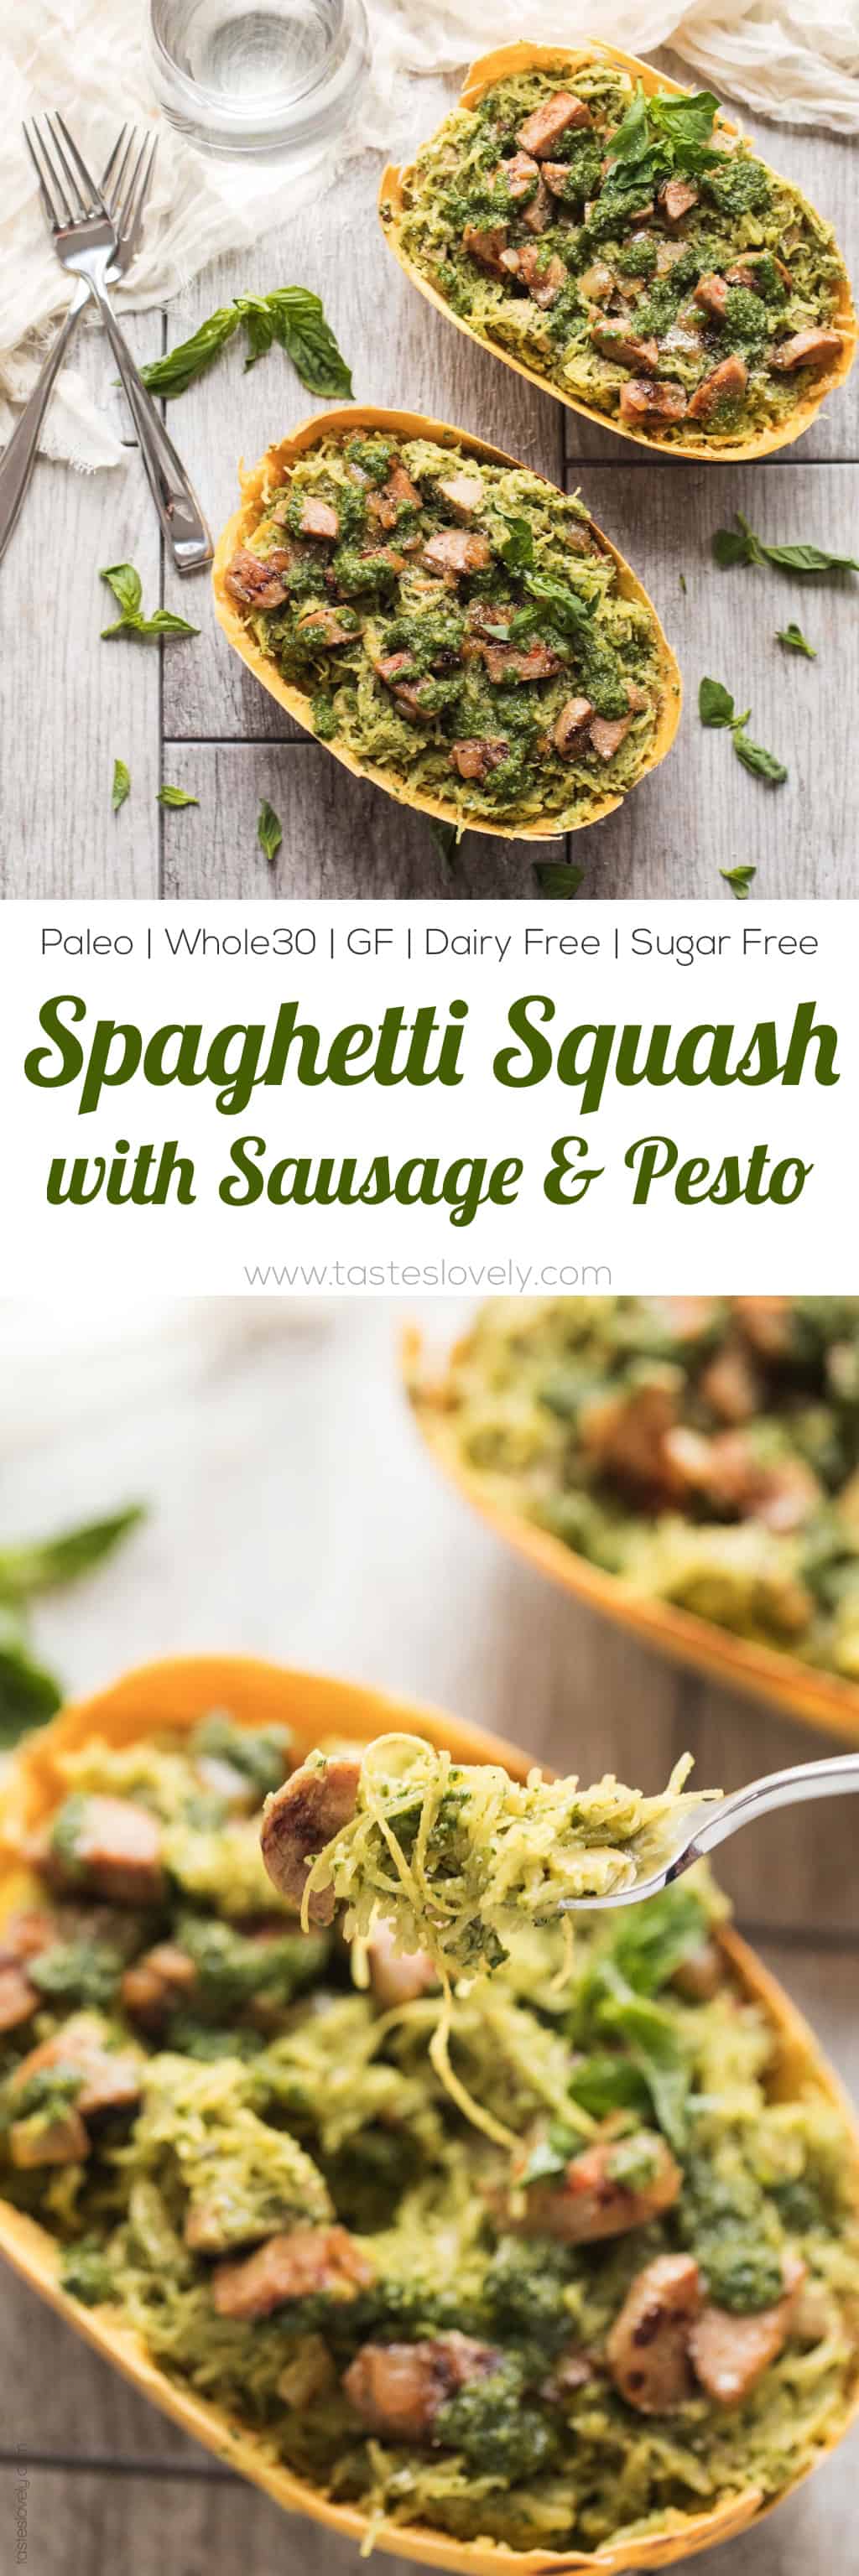 Spaghetti Squash with Sausage & Pesto (Paleo, Whole30) - a simple and delicious gluten free pasta recipe!